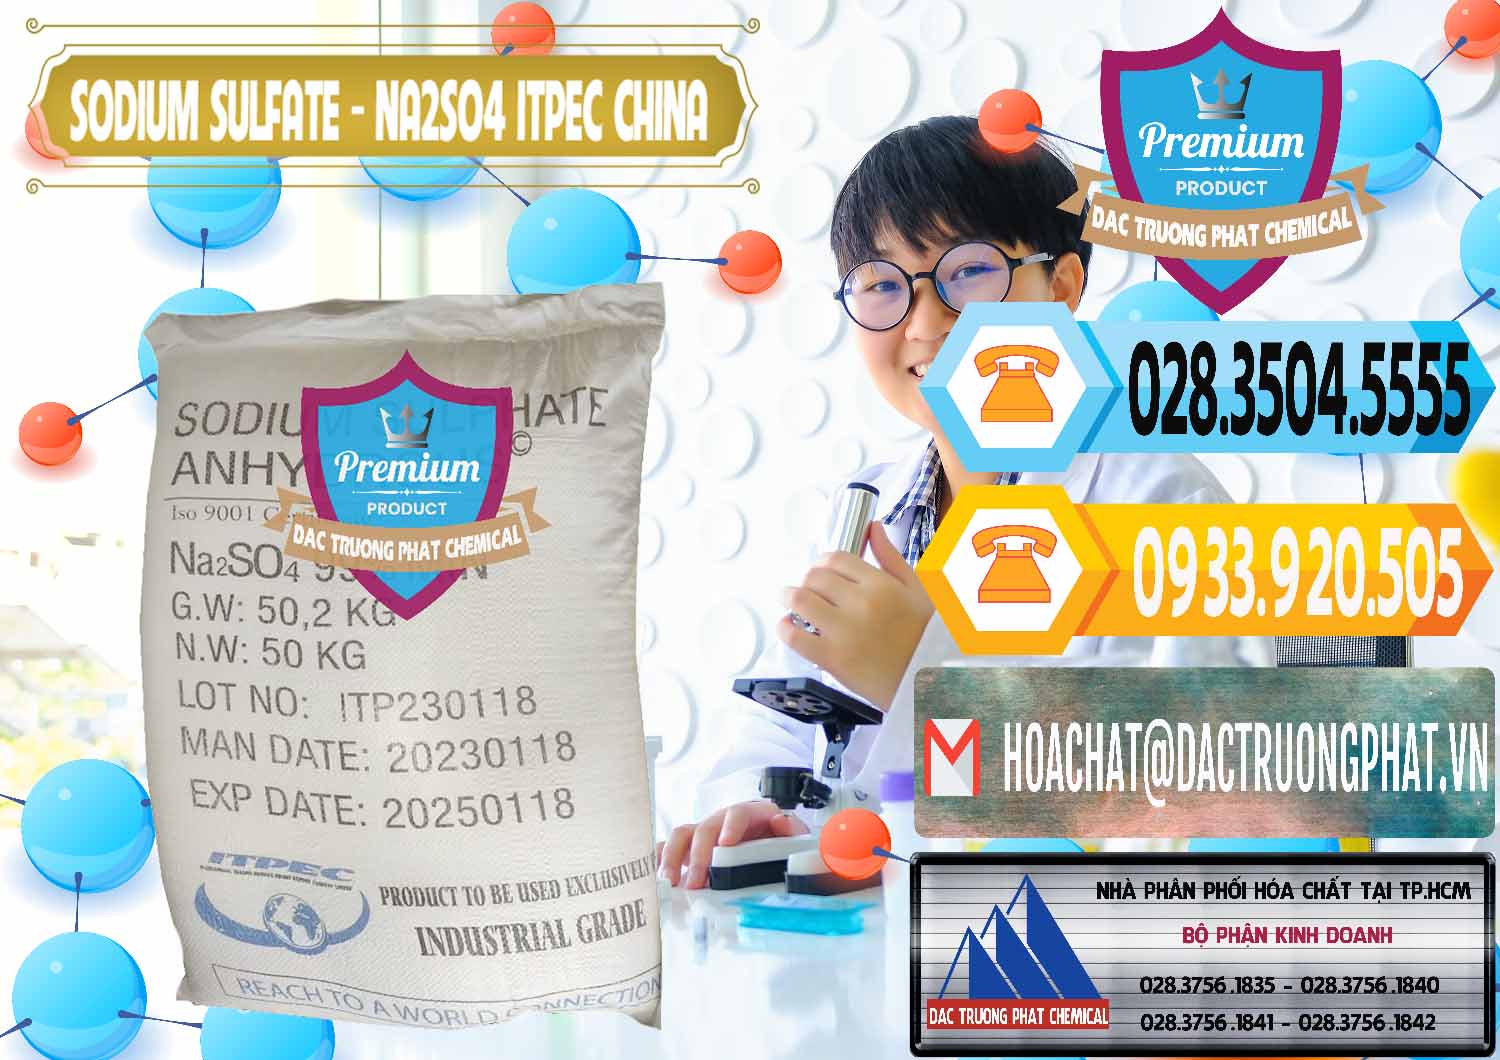 Chuyên nhập khẩu & bán Sodium Sulphate - Muối Sunfat Na2SO4 ITPEC Trung Quốc China - 0340 - Cty kinh doanh - phân phối hóa chất tại TP.HCM - hoachattayrua.net